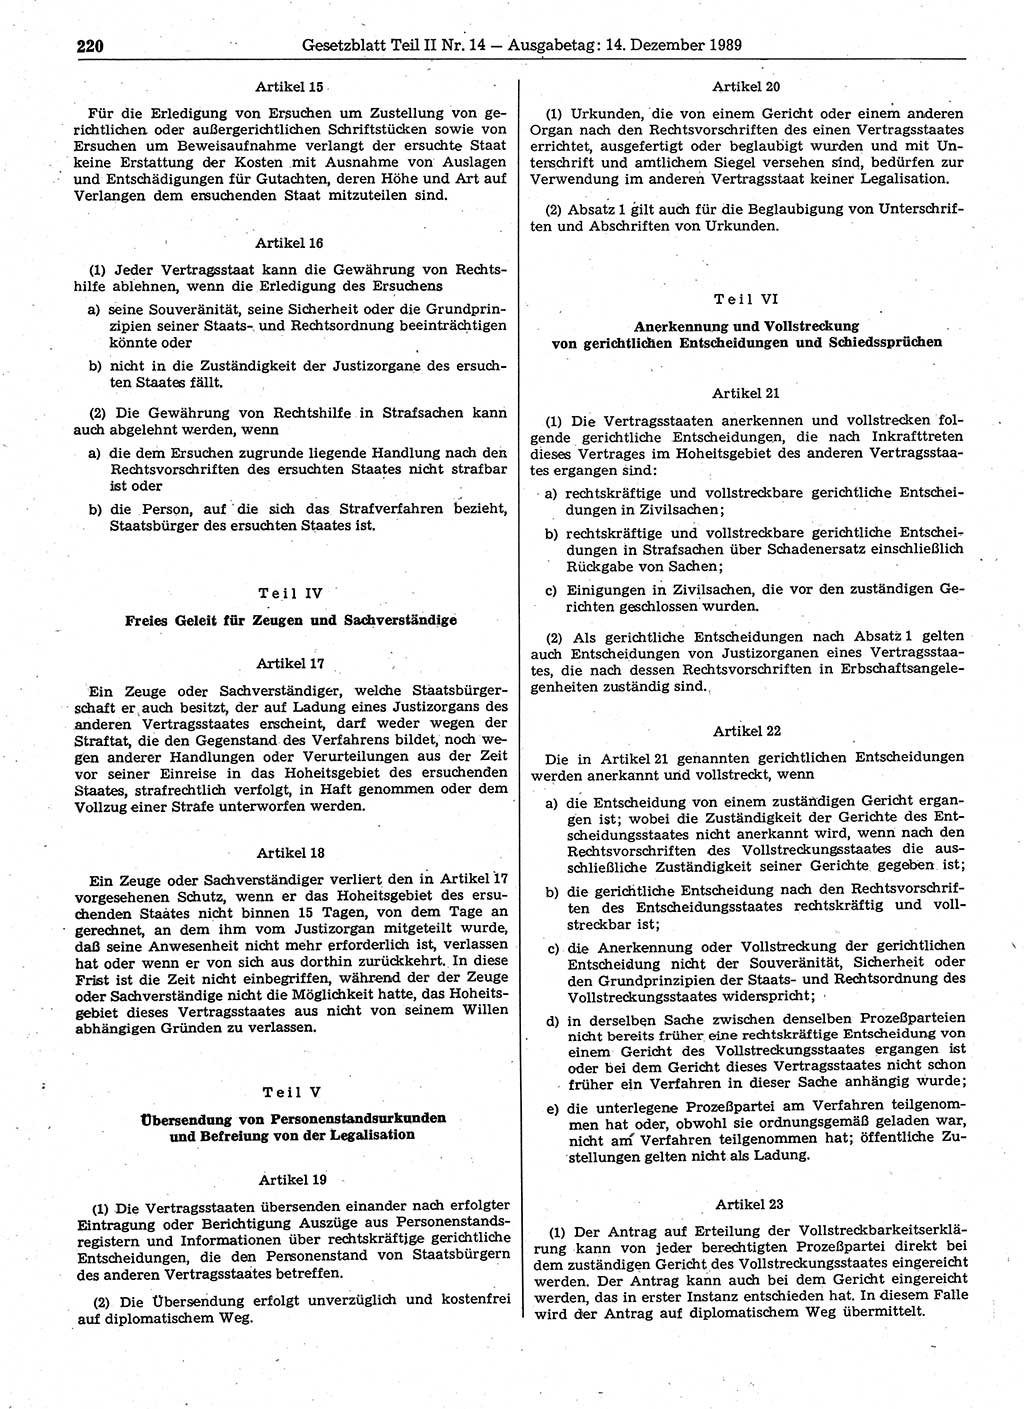 Gesetzblatt (GBl.) der Deutschen Demokratischen Republik (DDR) Teil ⅠⅠ 1989, Seite 220 (GBl. DDR ⅠⅠ 1989, S. 220)